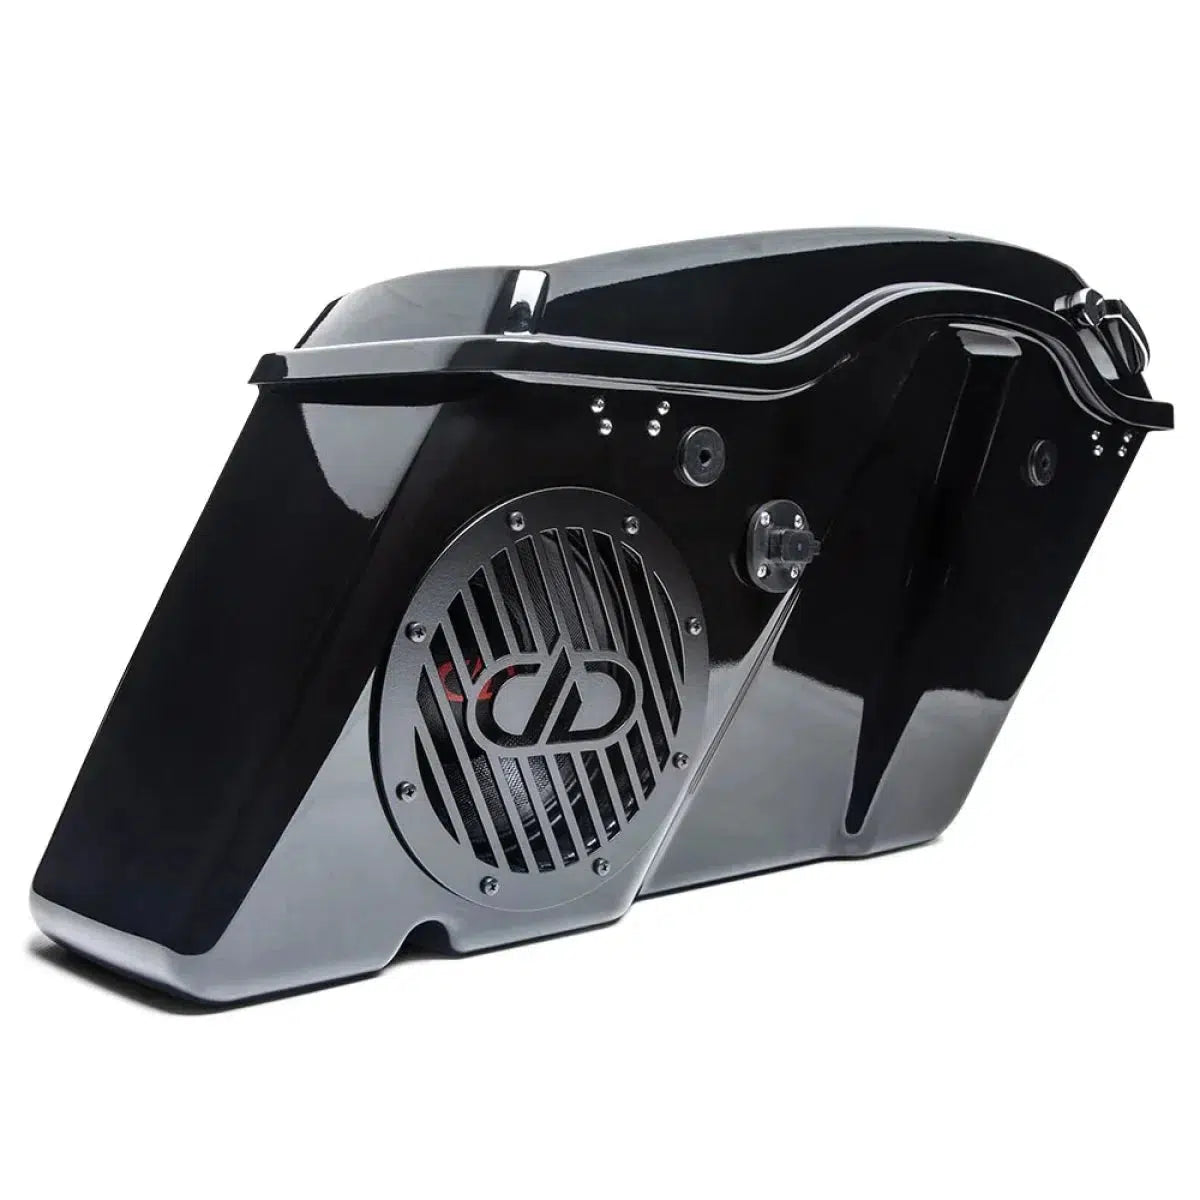 DD Audio-HD8-SBK-Accesorios de instalación para motos Harley-Davidson-Masori.de